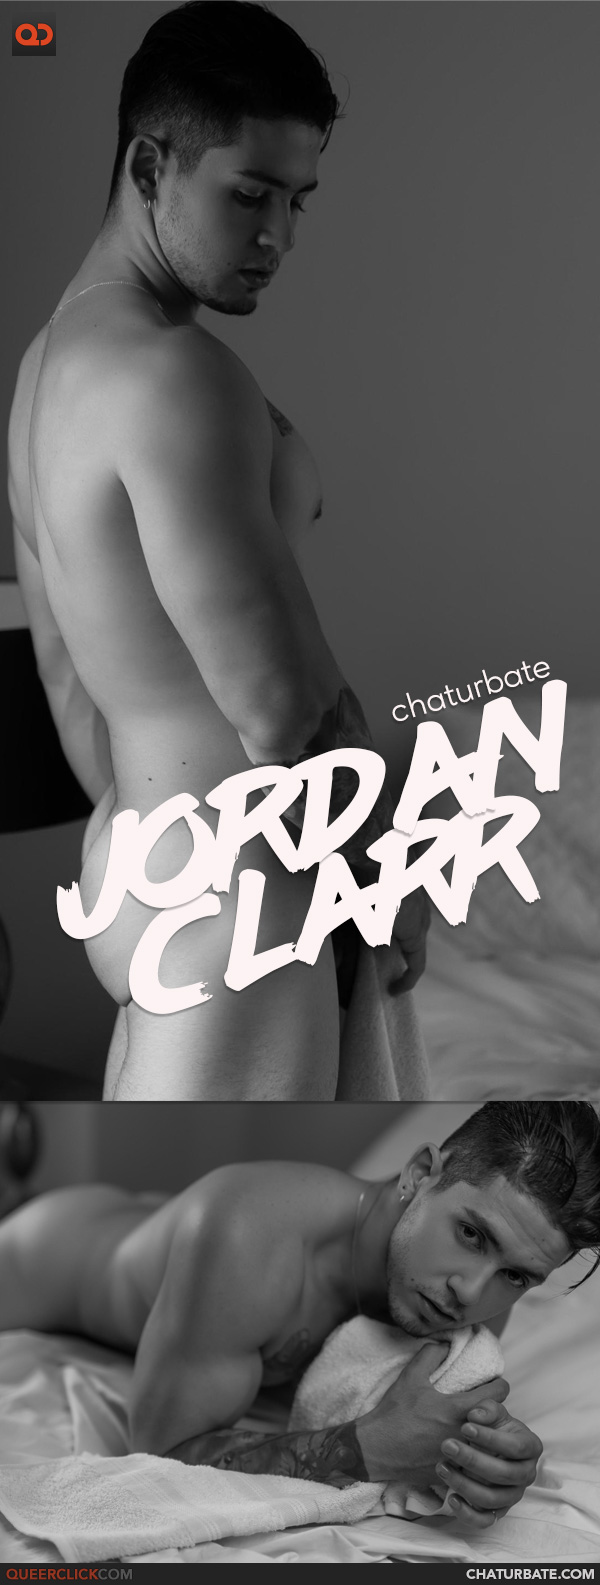 Chaturbate: Jordan_Clarr